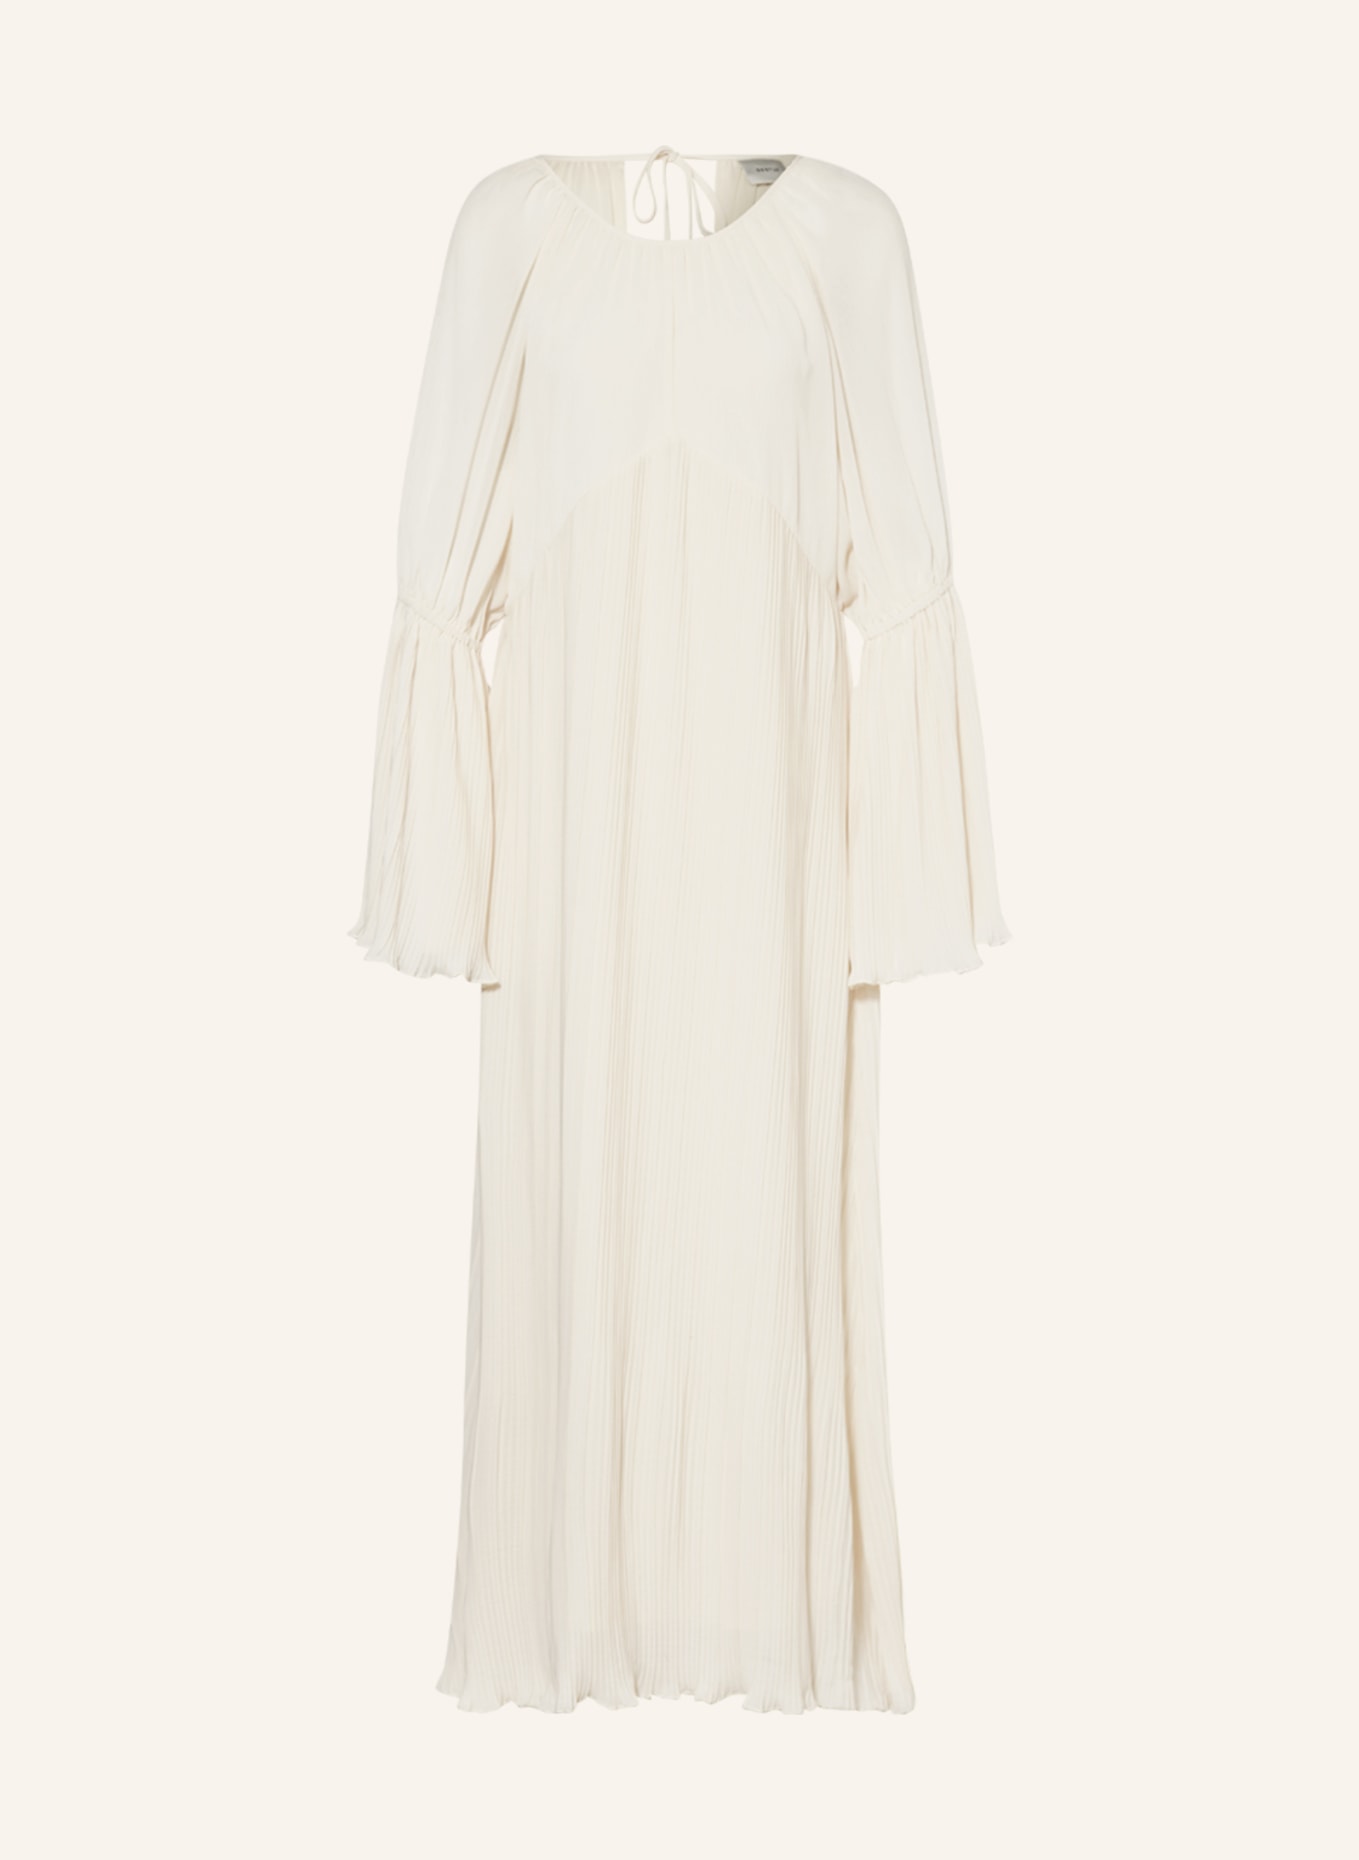 GESTUZ Kleid CELESTEGZ mit Plissees, Farbe: ECRU (Bild 1)